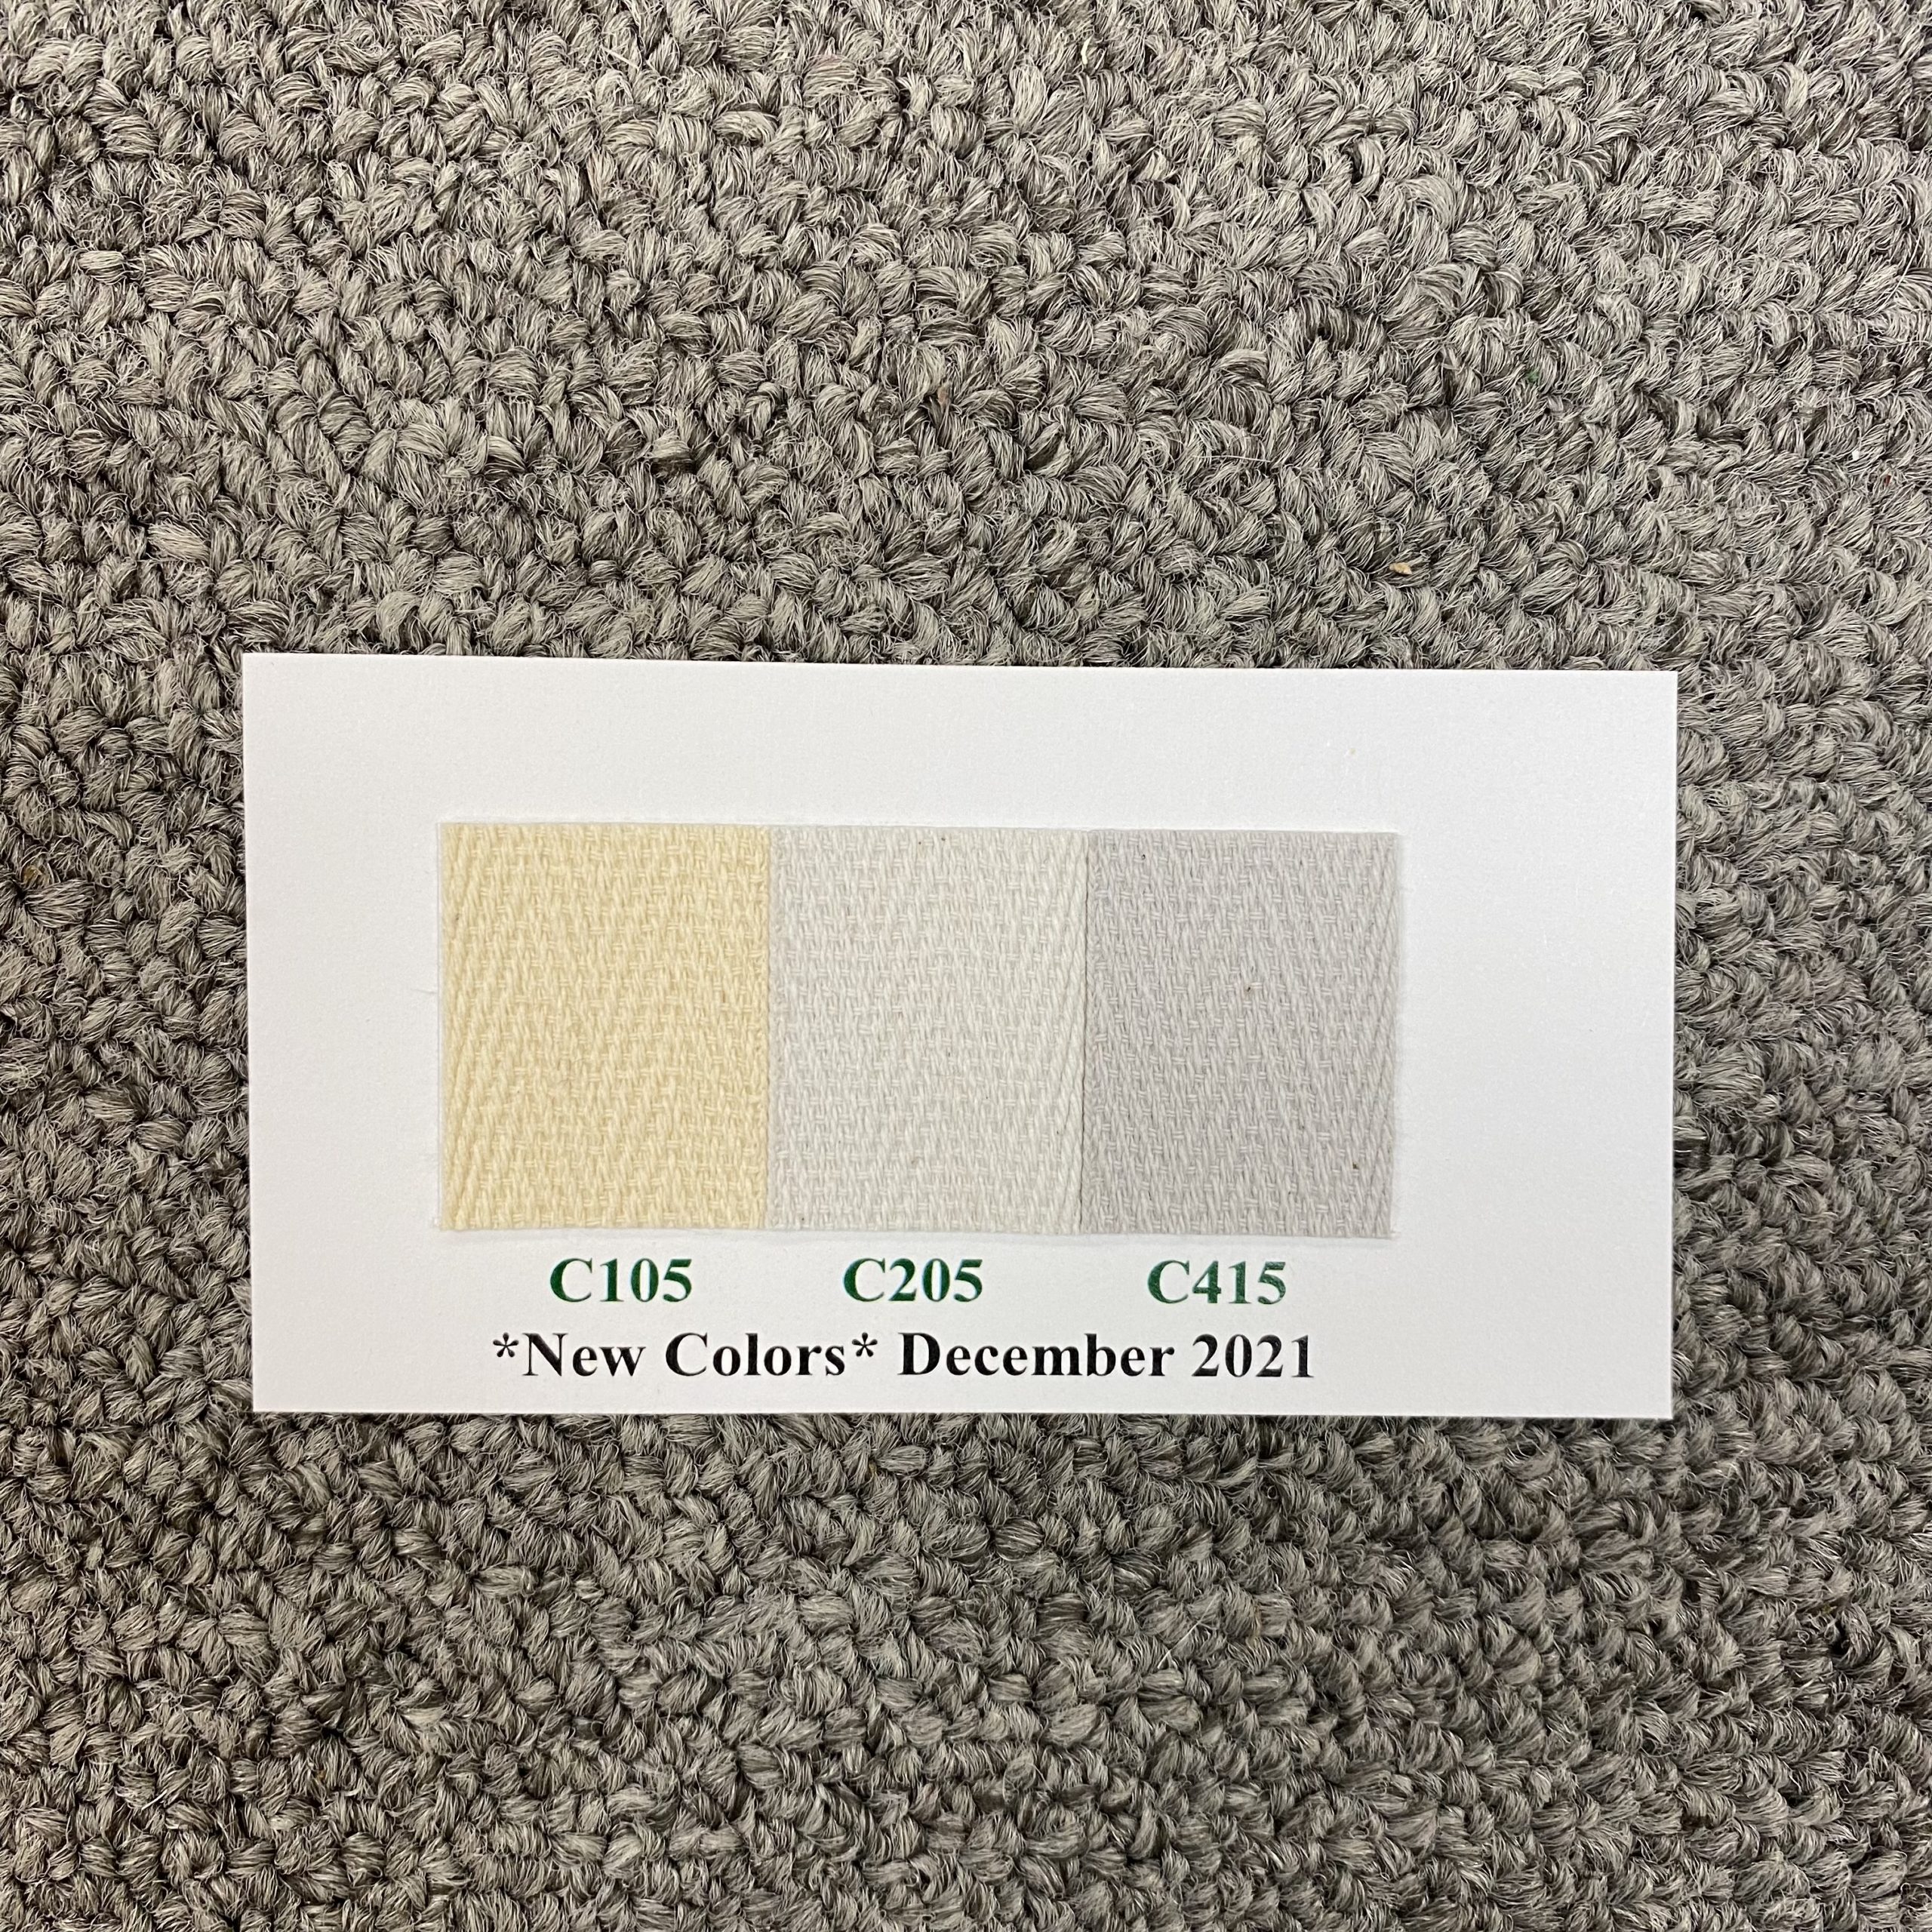 Instabind Regular Color Swatch Card